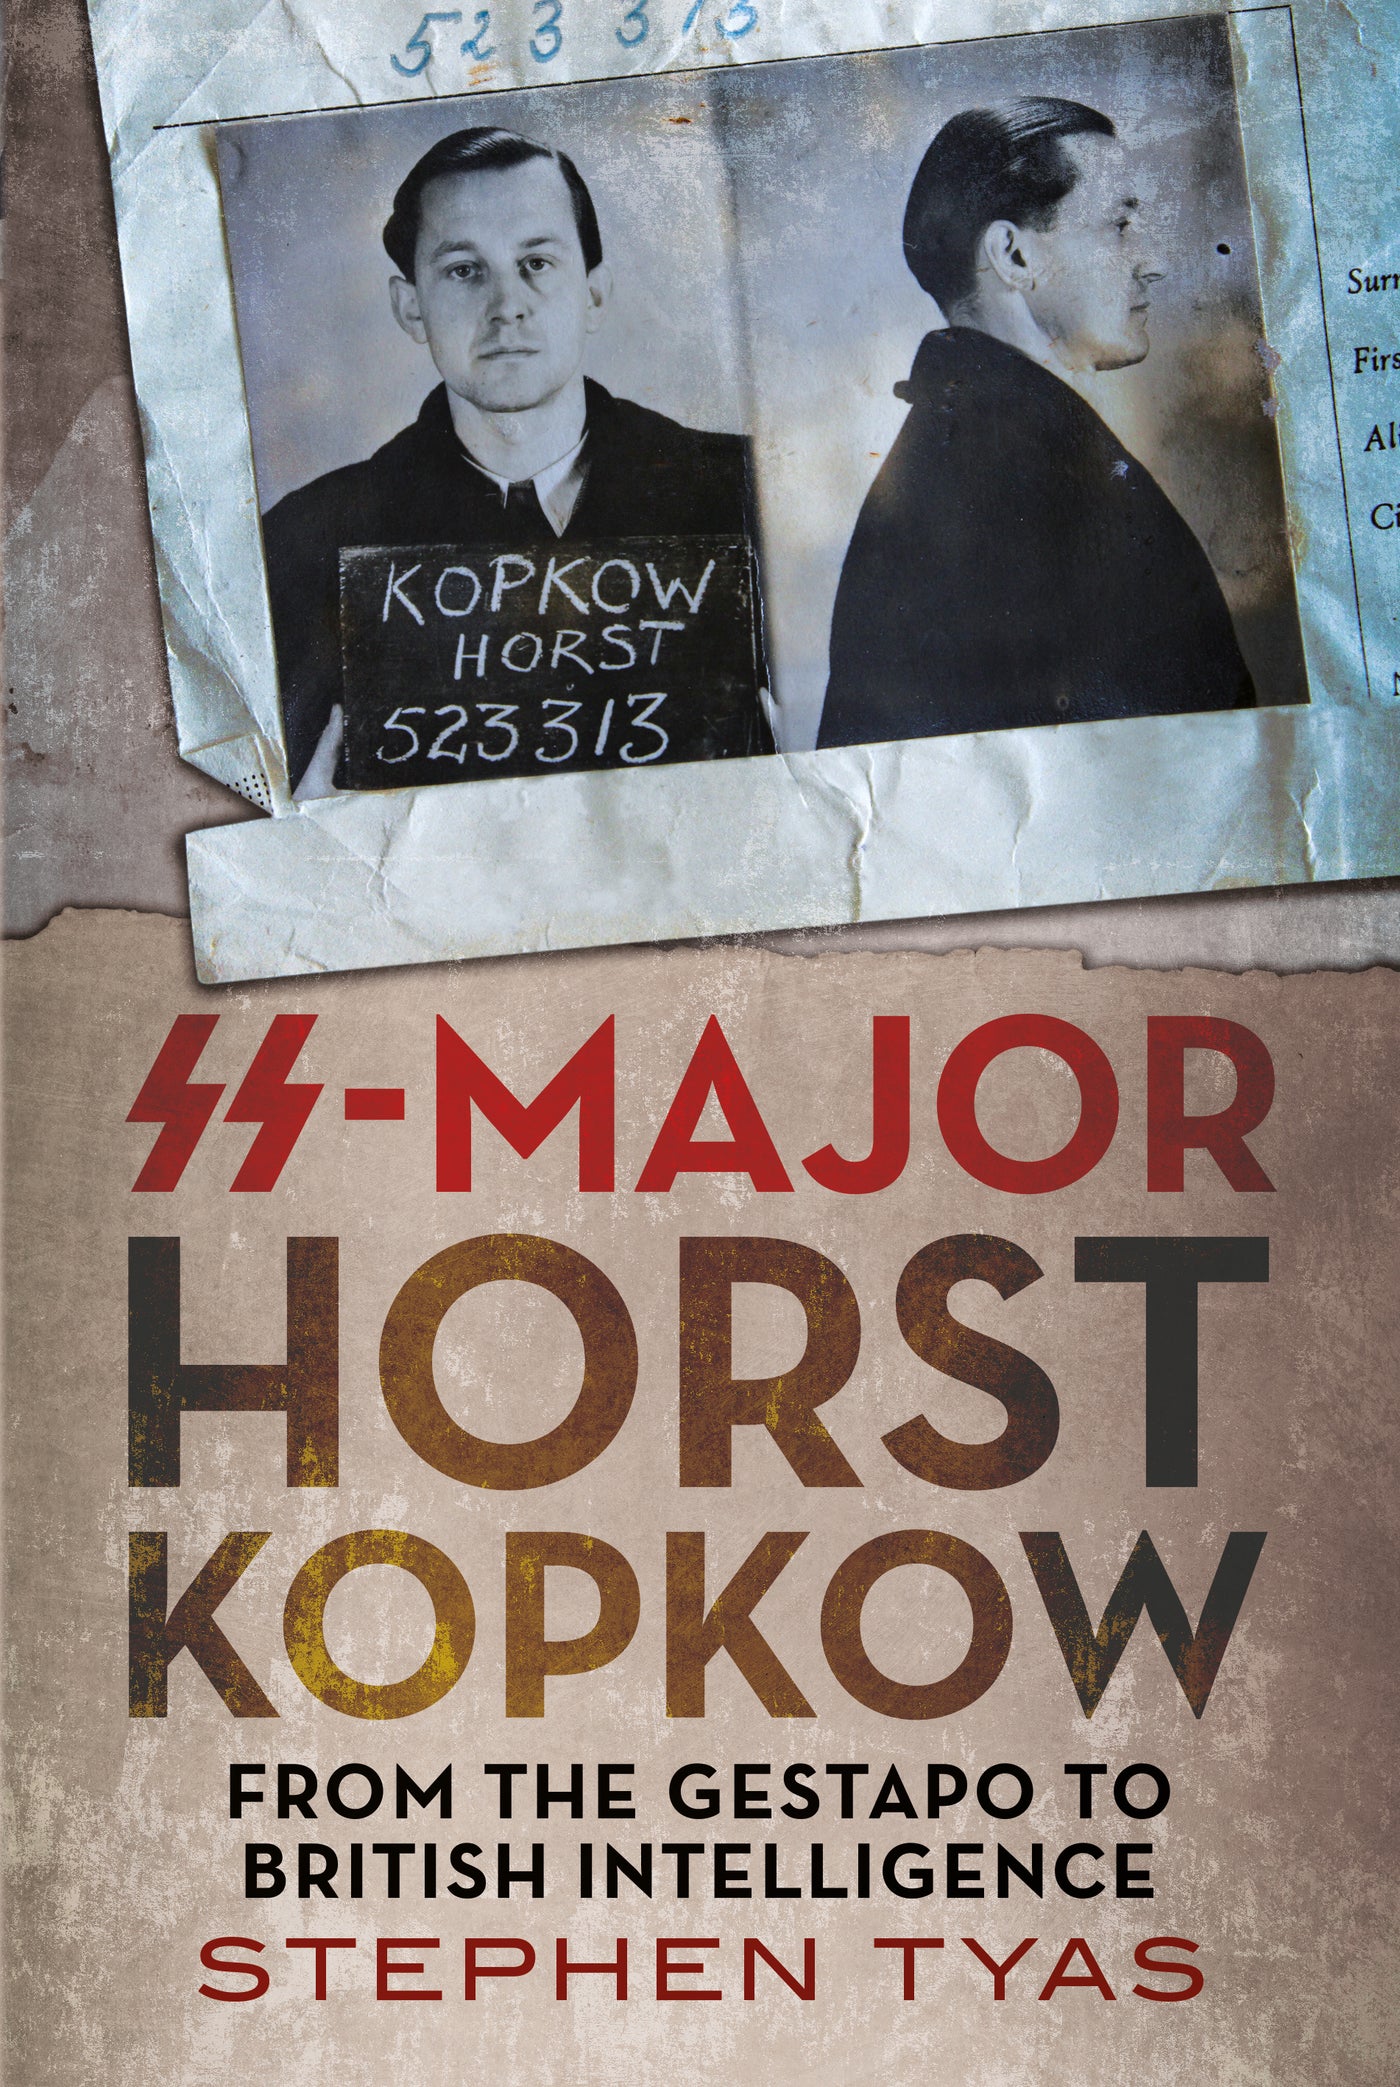 SS-Major Horst Kopkow